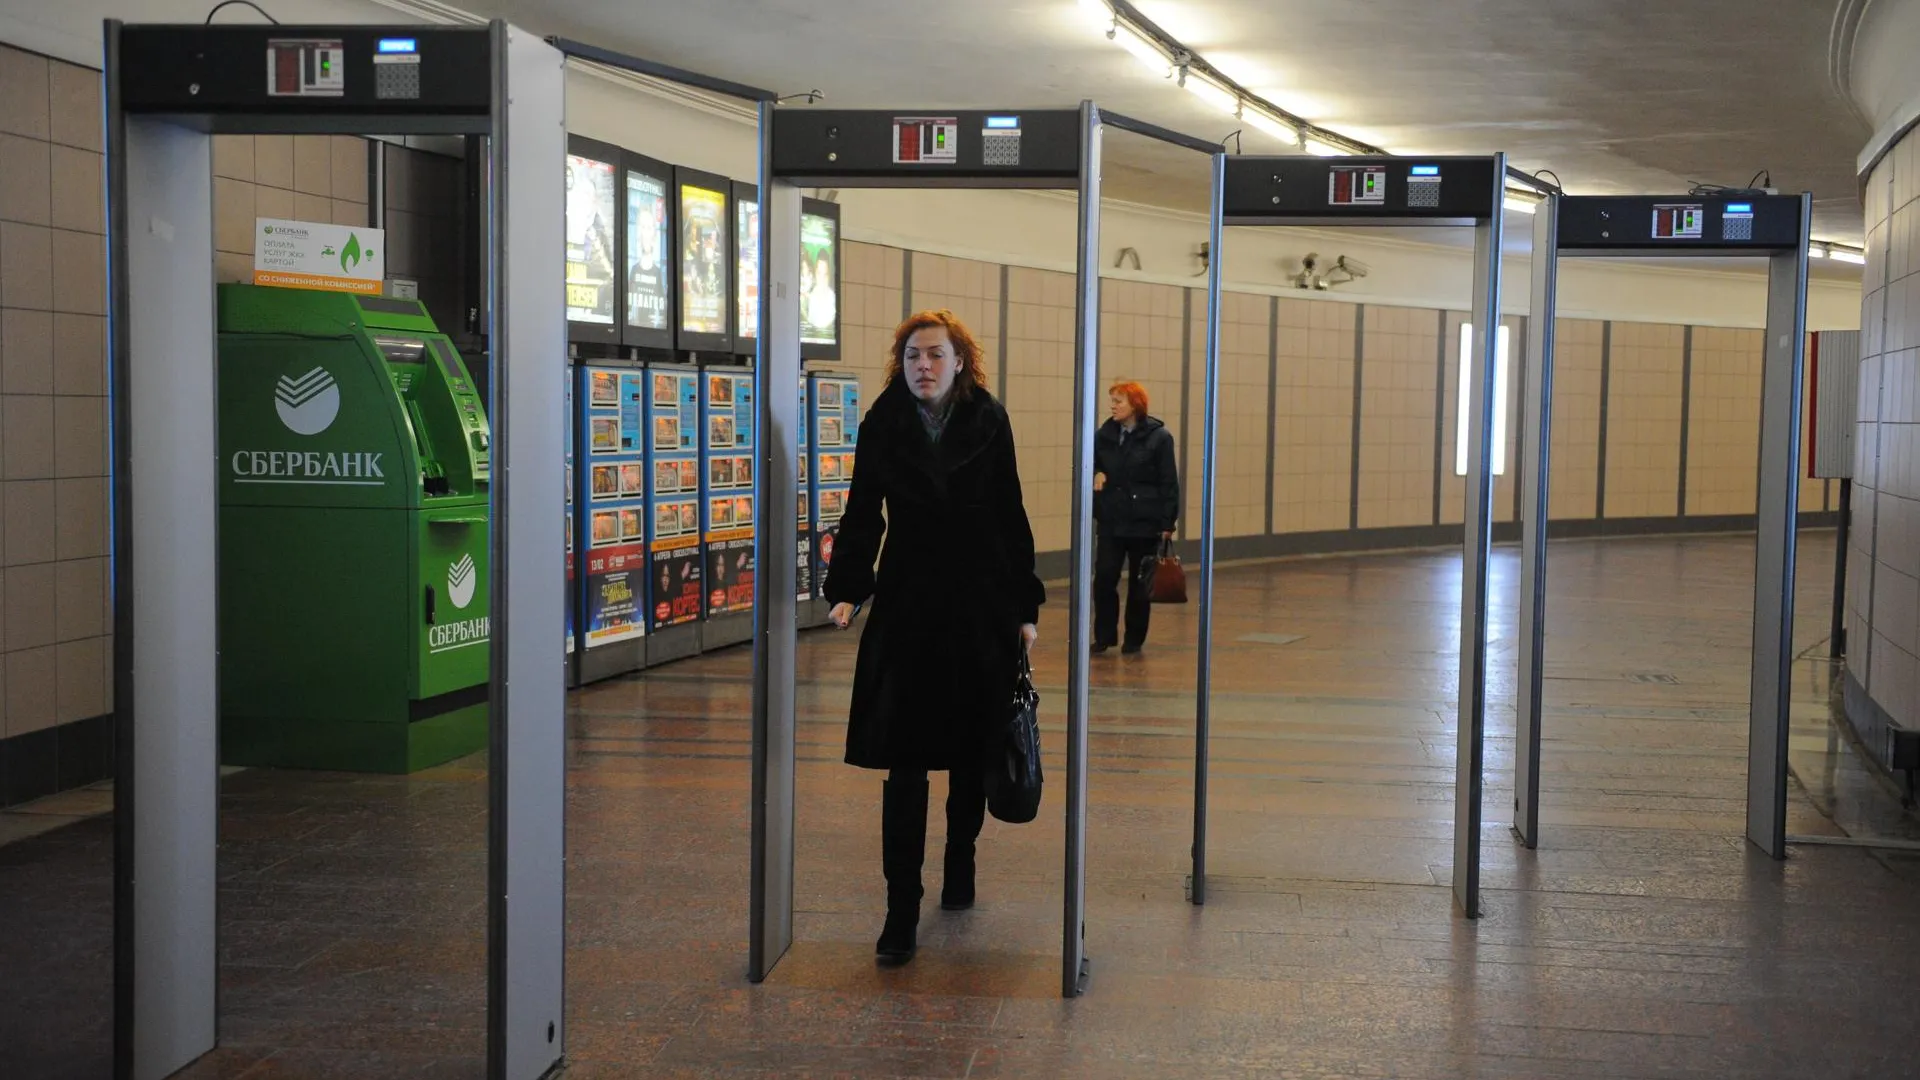 Специальные датчики помогут обнаружить посторонних в тоннелях метро Москвы